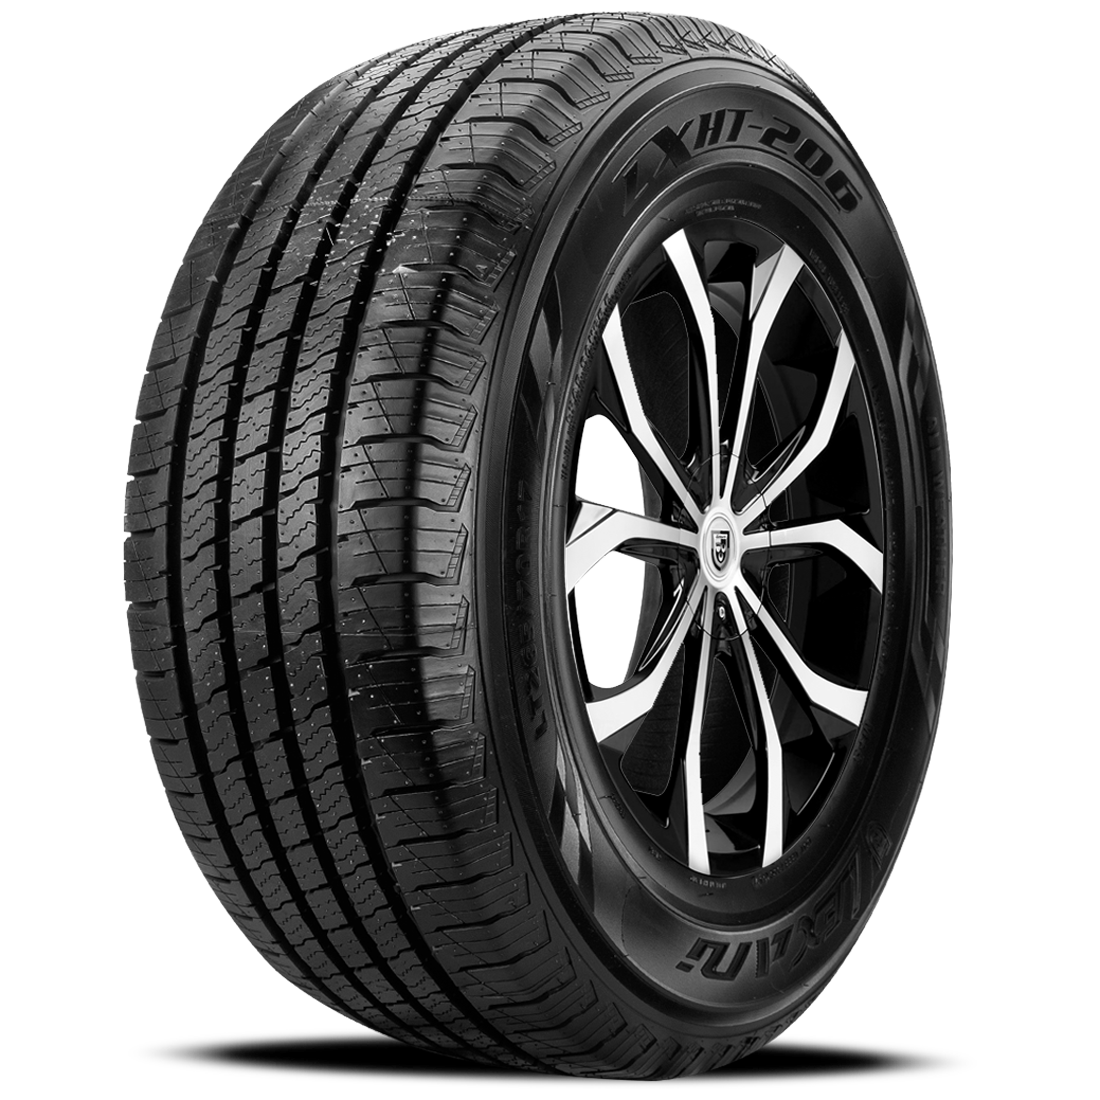 LEXANI LXHT-206 P255/70R16 (30.1X10R 16) Tires